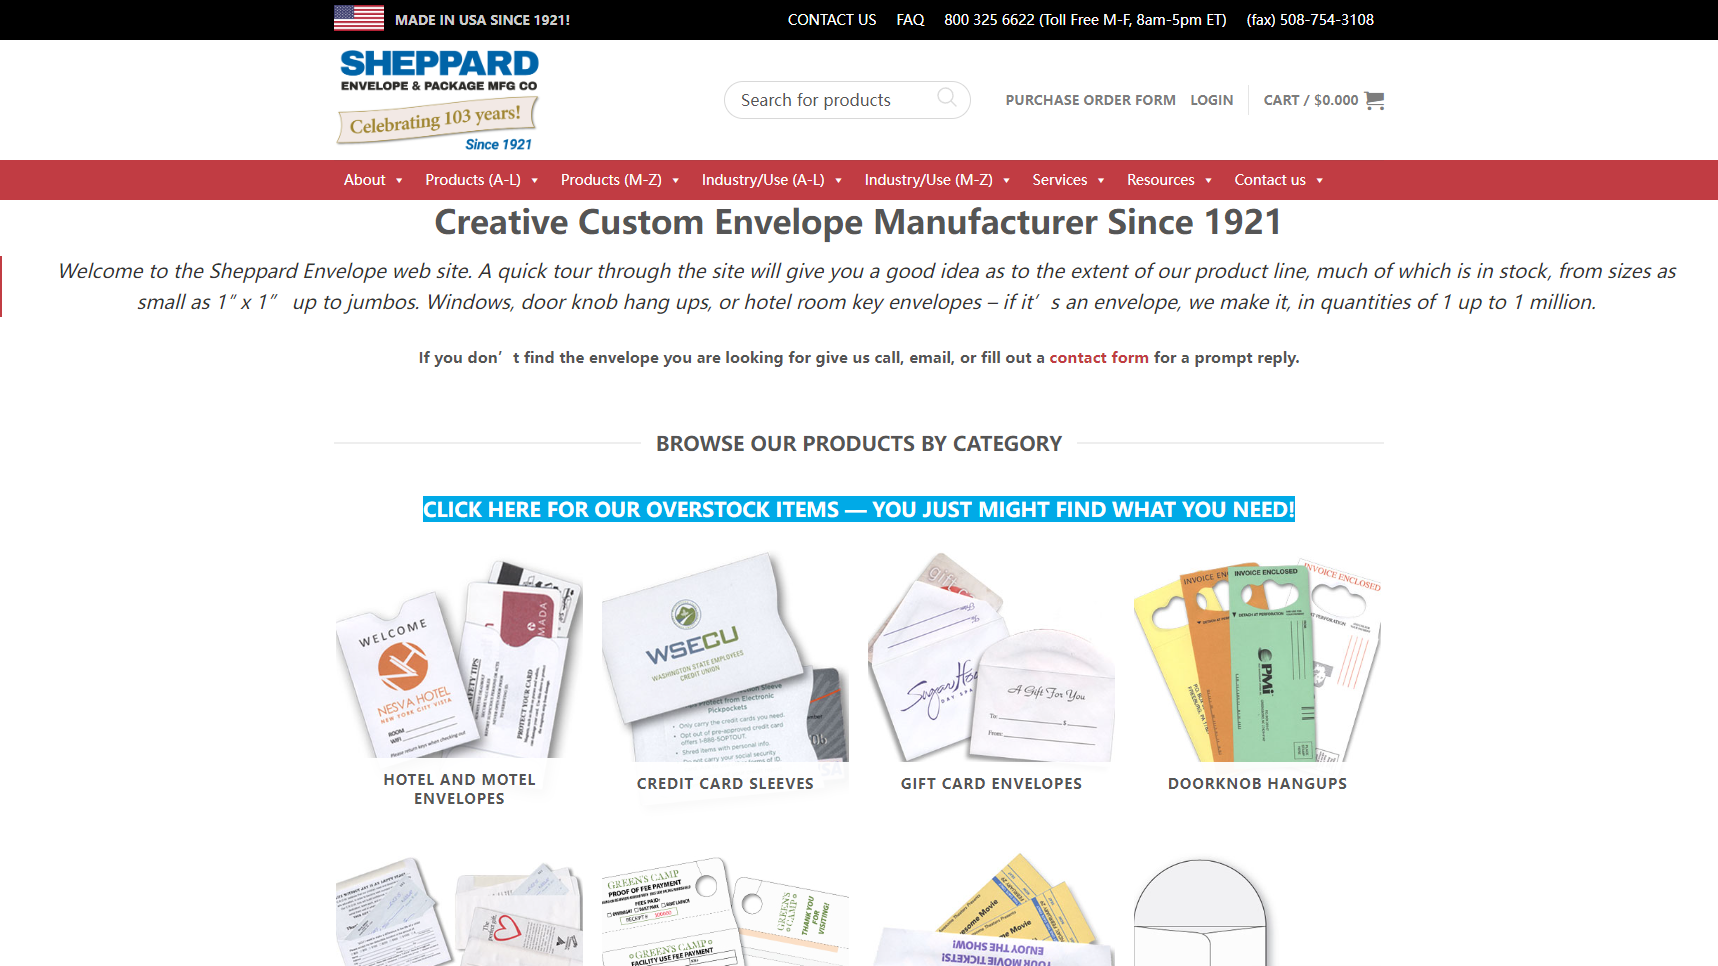 Sheppard Envelope Mfg. Co. - Envelope Manufacturer